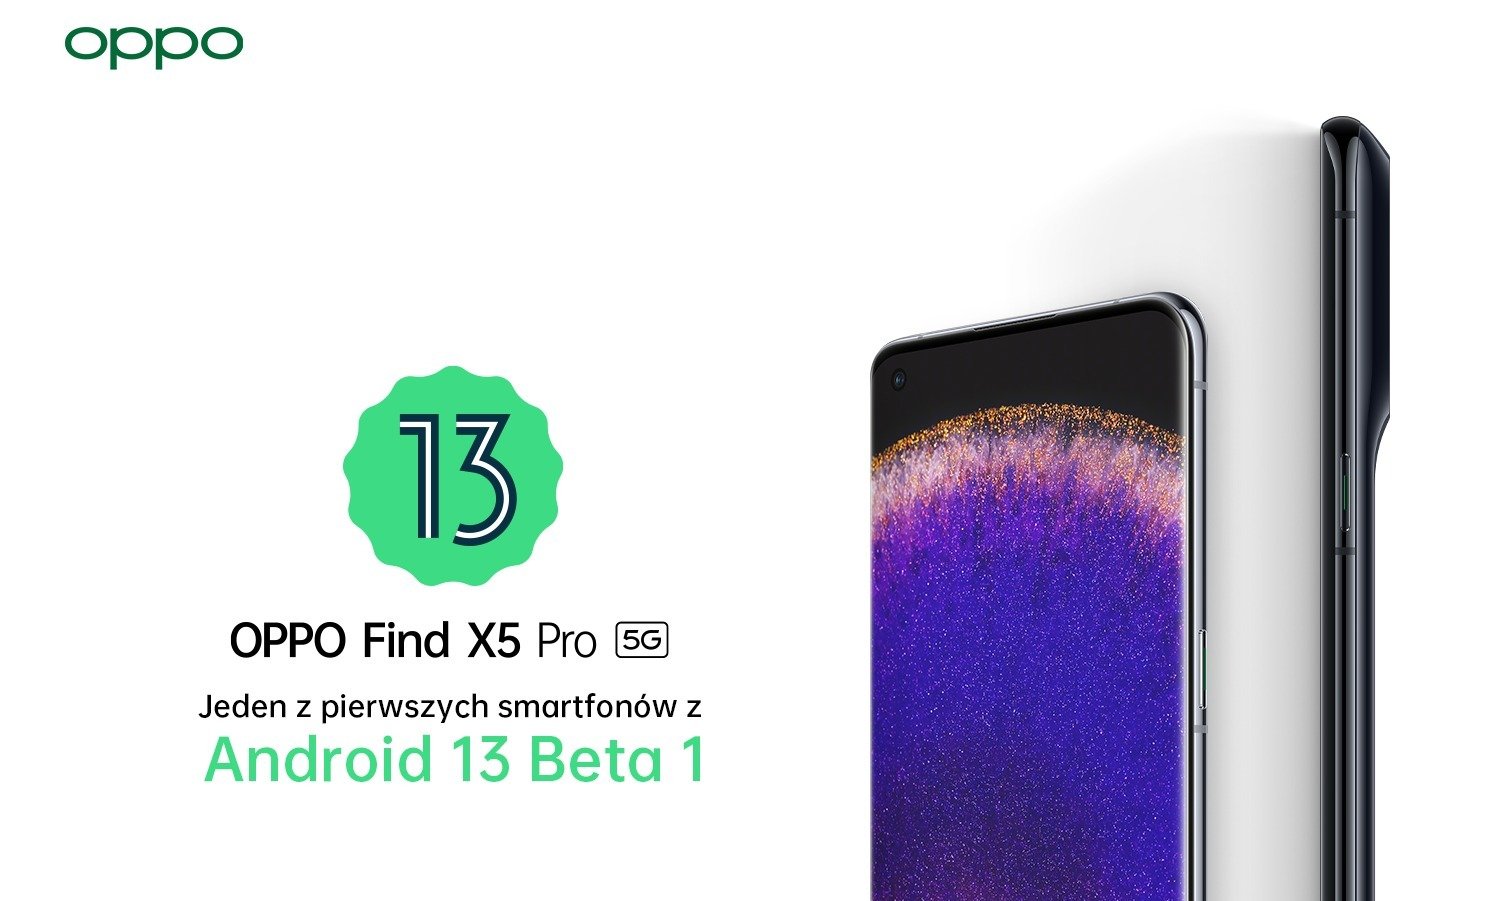 OPPO Find X5 Pro, jako jeden z pierwszych smartfonów otrzyma aktualizację do systemu Android 13 Beta 1